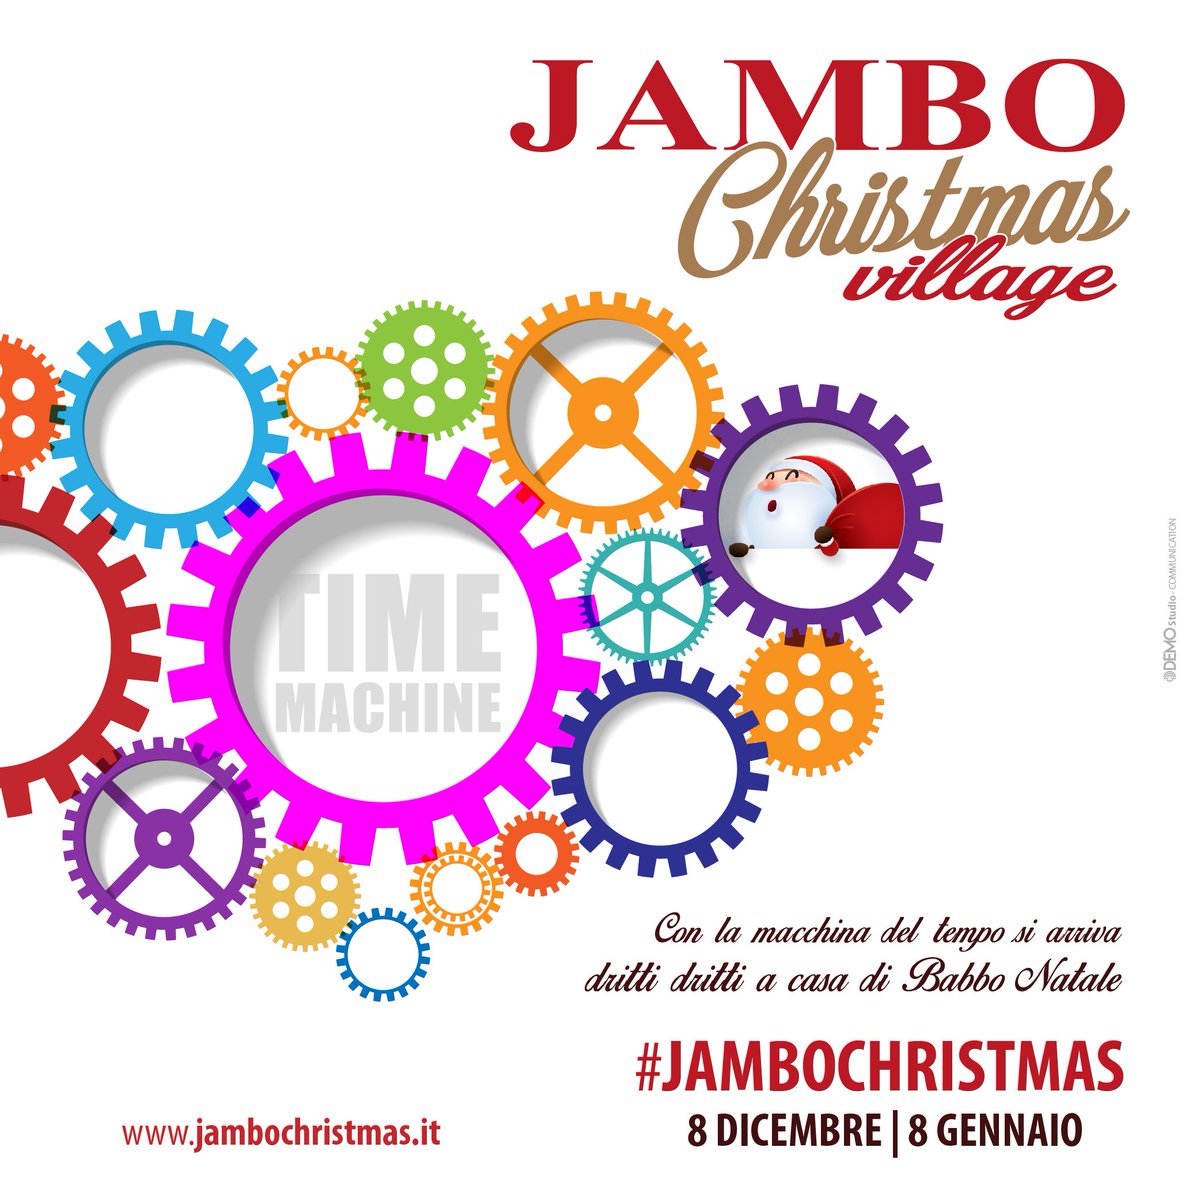 Babbo Natale Jambo.Jambo Christmas On Twitter Jambo Christmas Village Manca Davvero Poco Per Lasciarsi Proiettare Nel Magico Mondo Del Natale In 3d